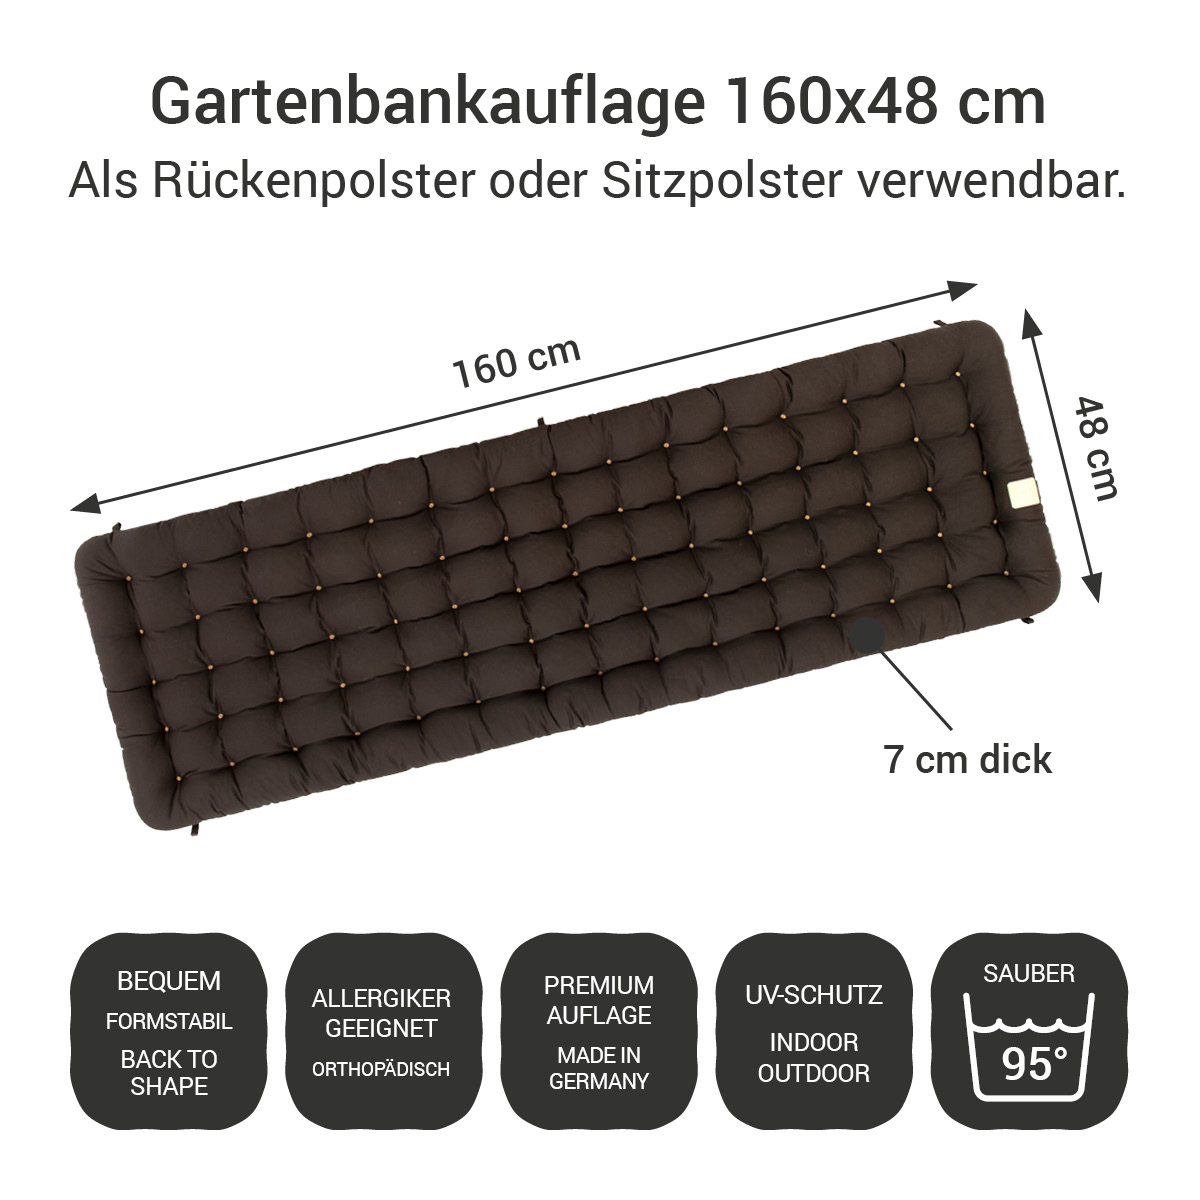 Gartenbank Auflage braun 160x48 cm / 160 x 50 cm | bequem & orthopädisch, komplett im Ganzen waschbar bis 95°C, wetterfest, Made in Germany